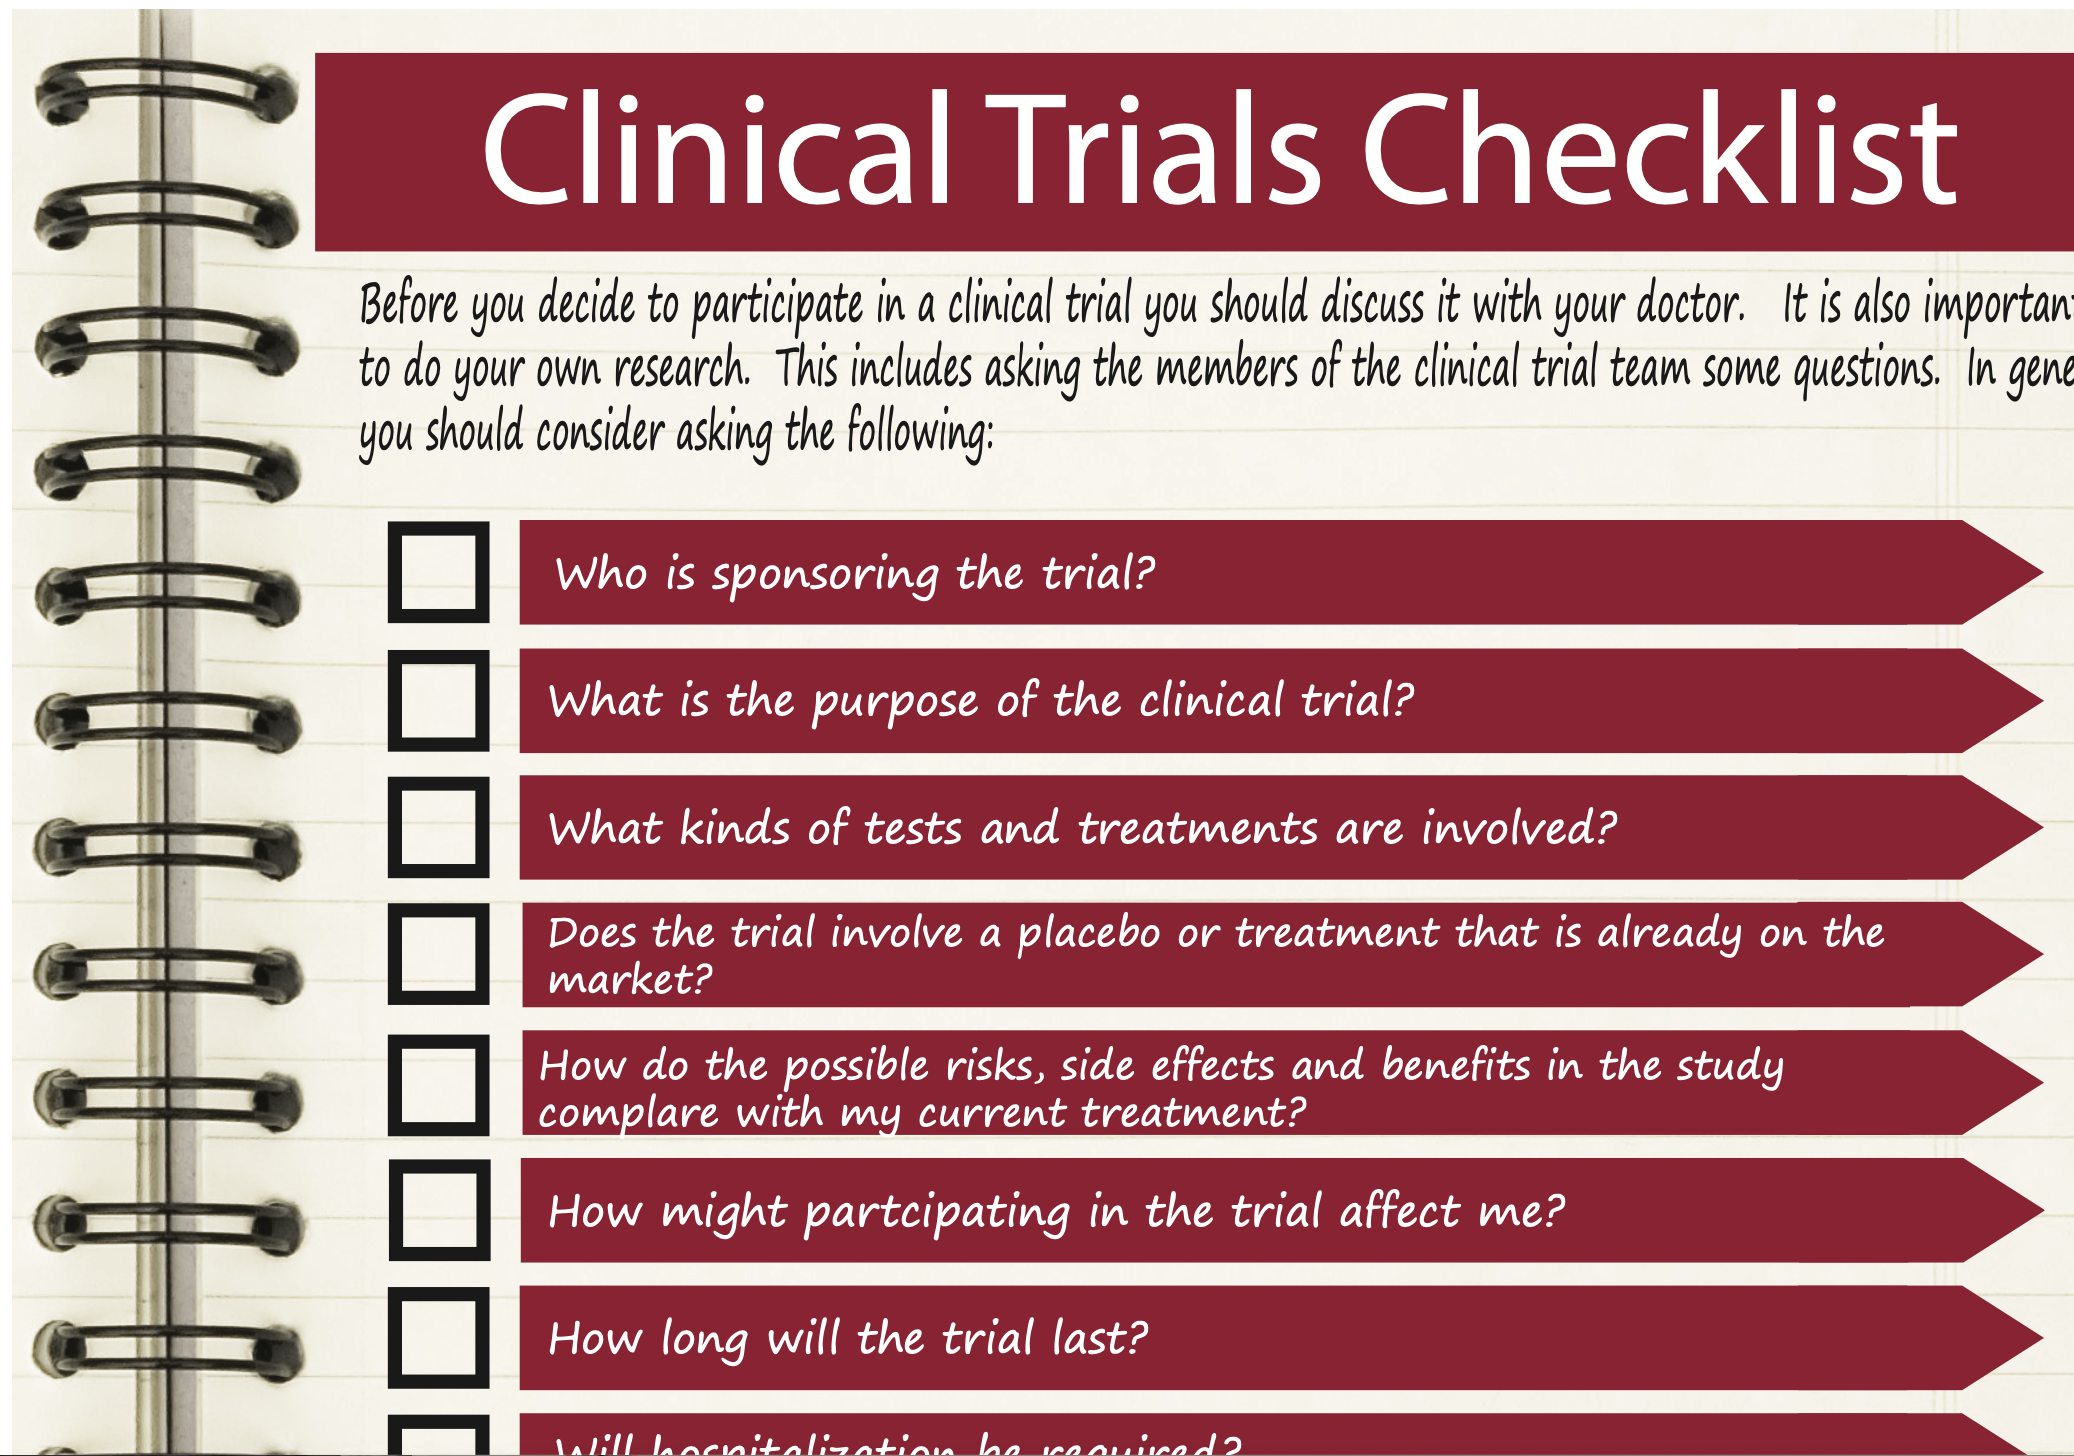 Clinical Trials Checklist thumbnail